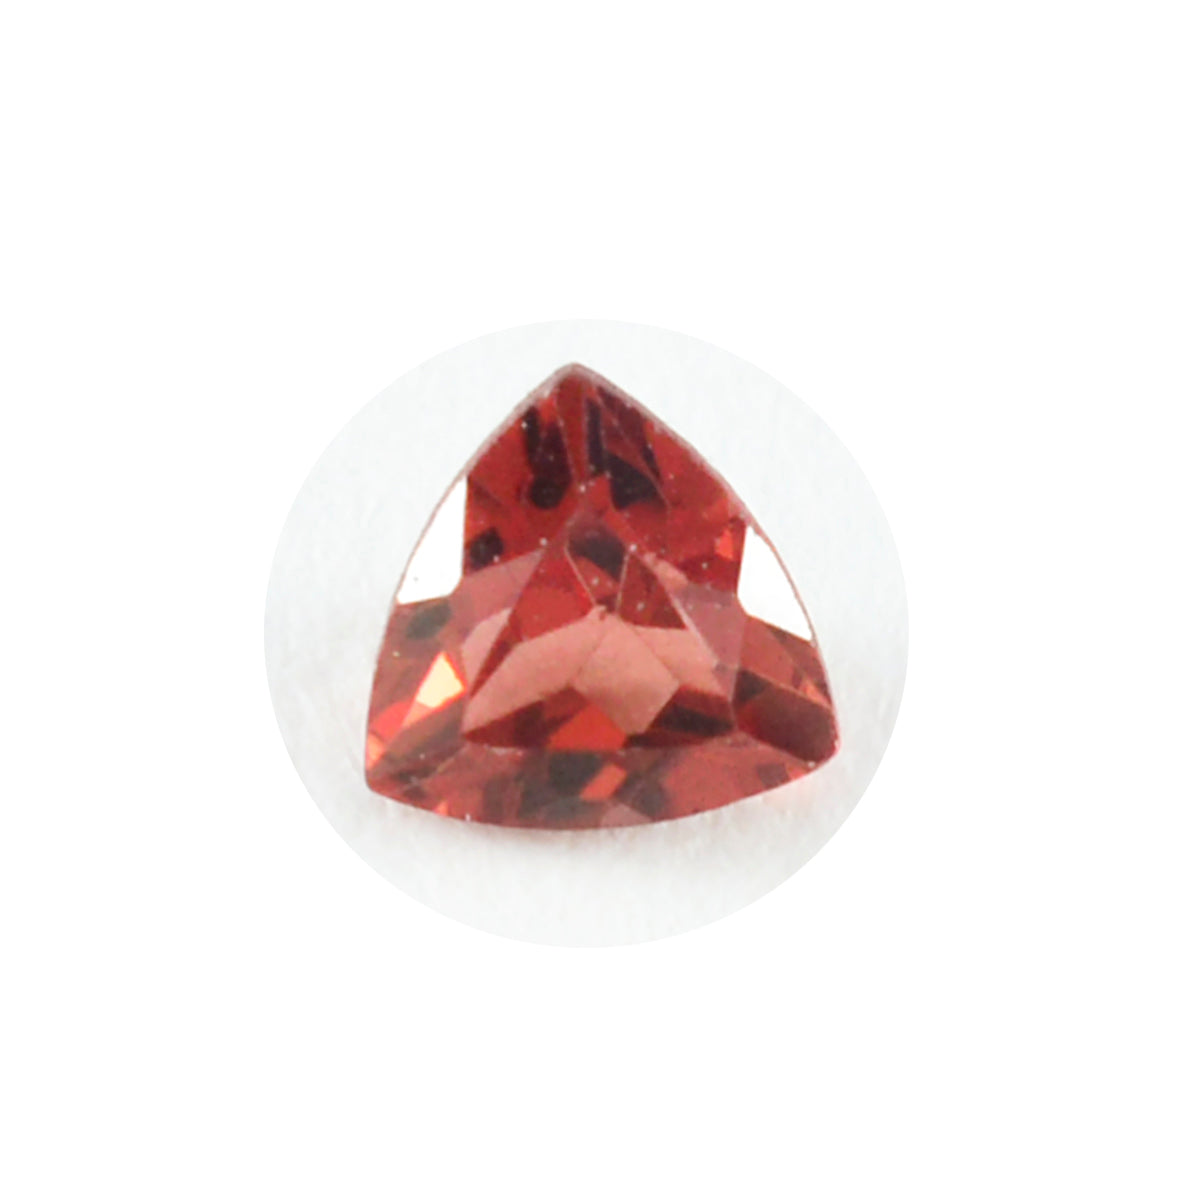 riyogems 1 шт. настоящий красный гранат ограненный 9x9 мм форма триллиона замечательного качества свободный драгоценный камень